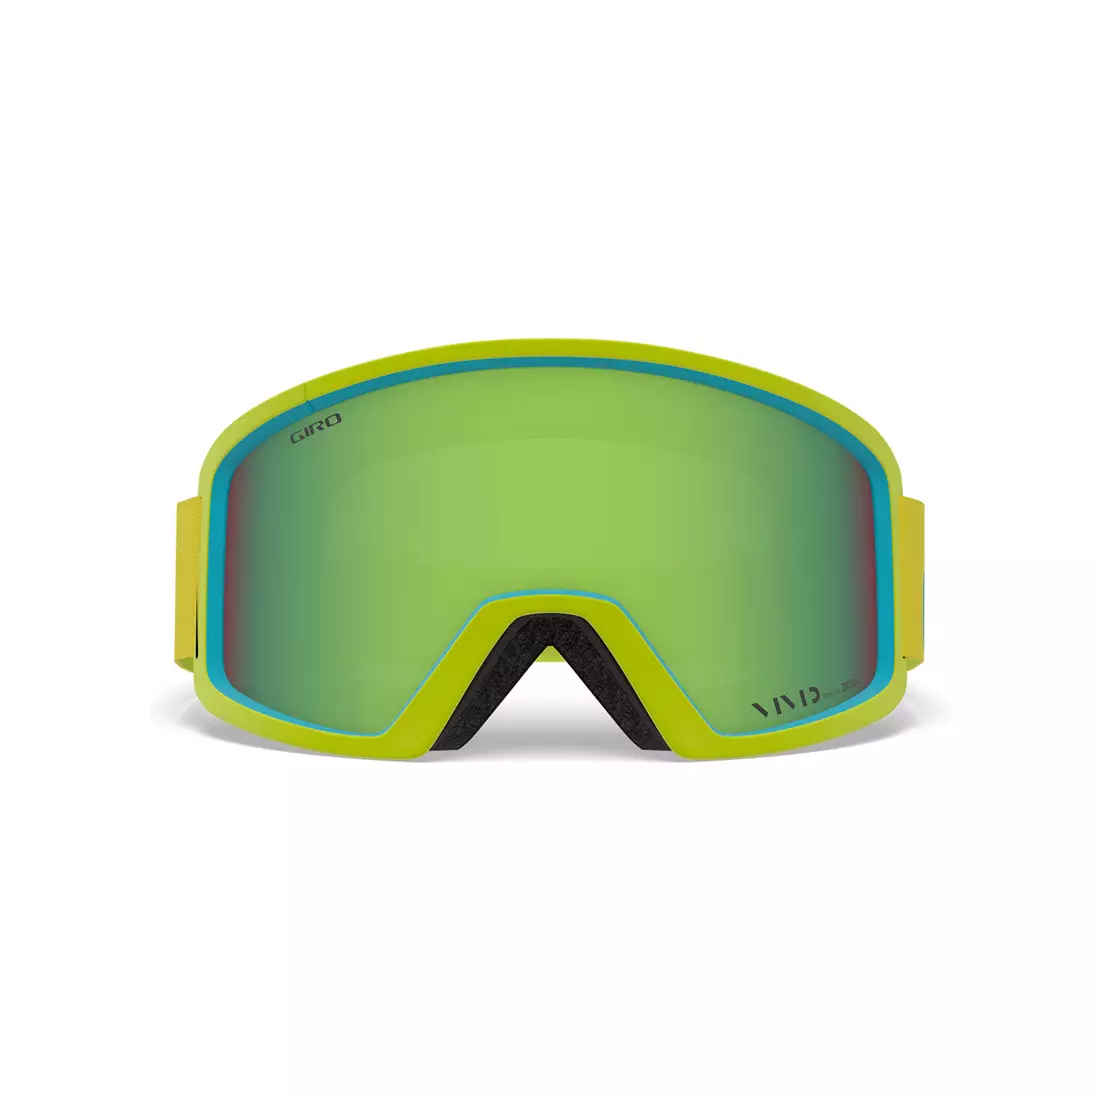 GIRO gogle zimowe narciarskie/snowboardowe BLOK CITRON ICE APX (VIVID EMERALD 22% S2) GR-7105313